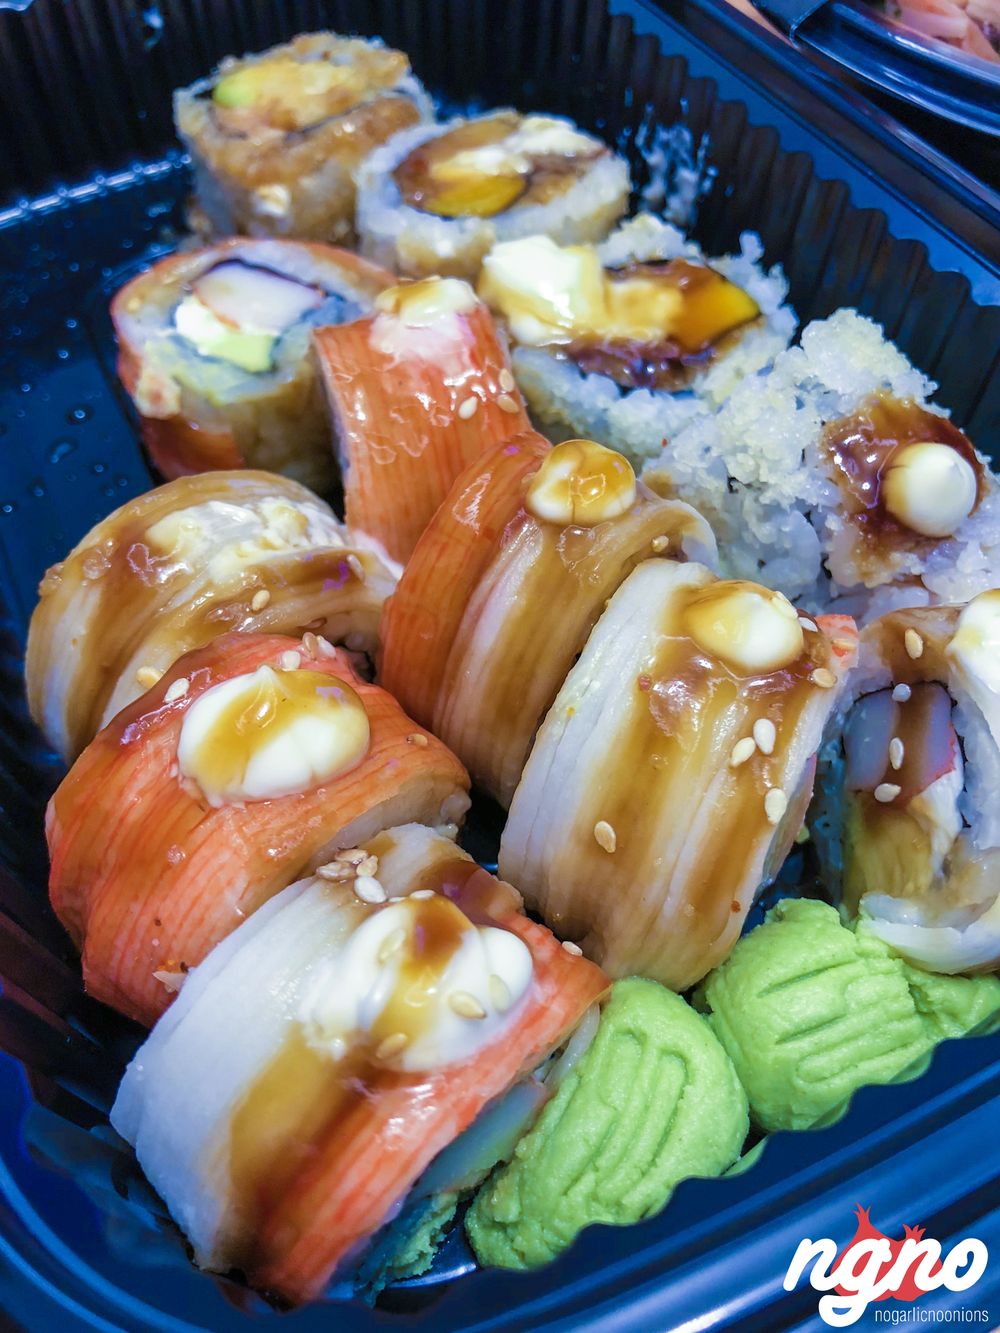 obi-sushi-nogarlicnoonions-142018-08-24-11-18-01